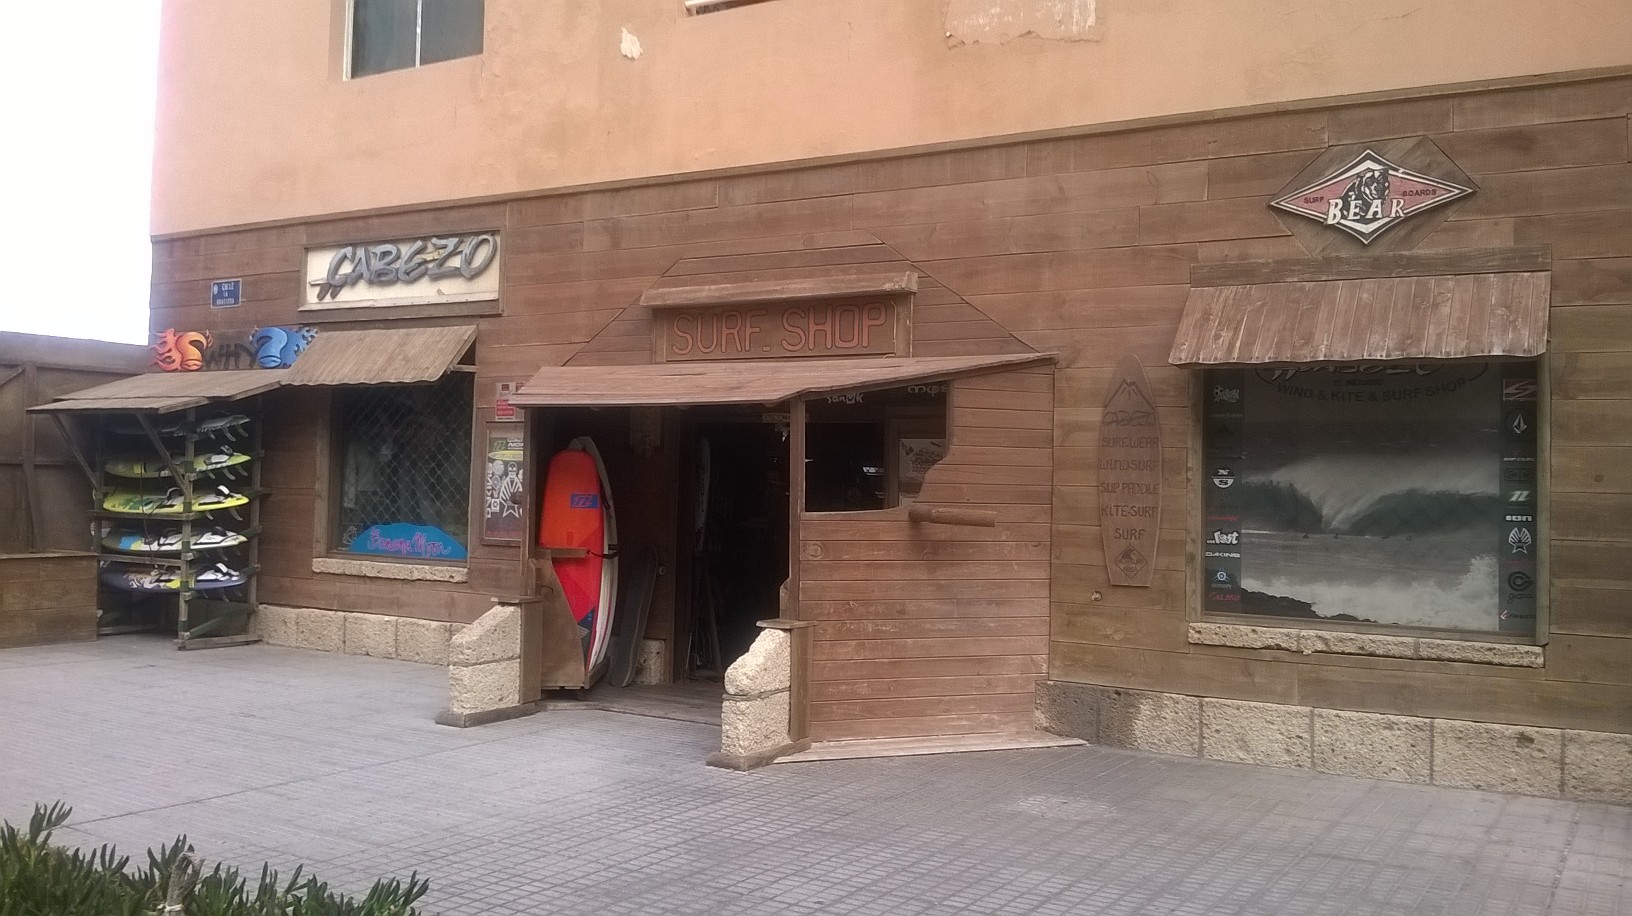 Cabezo surf shop